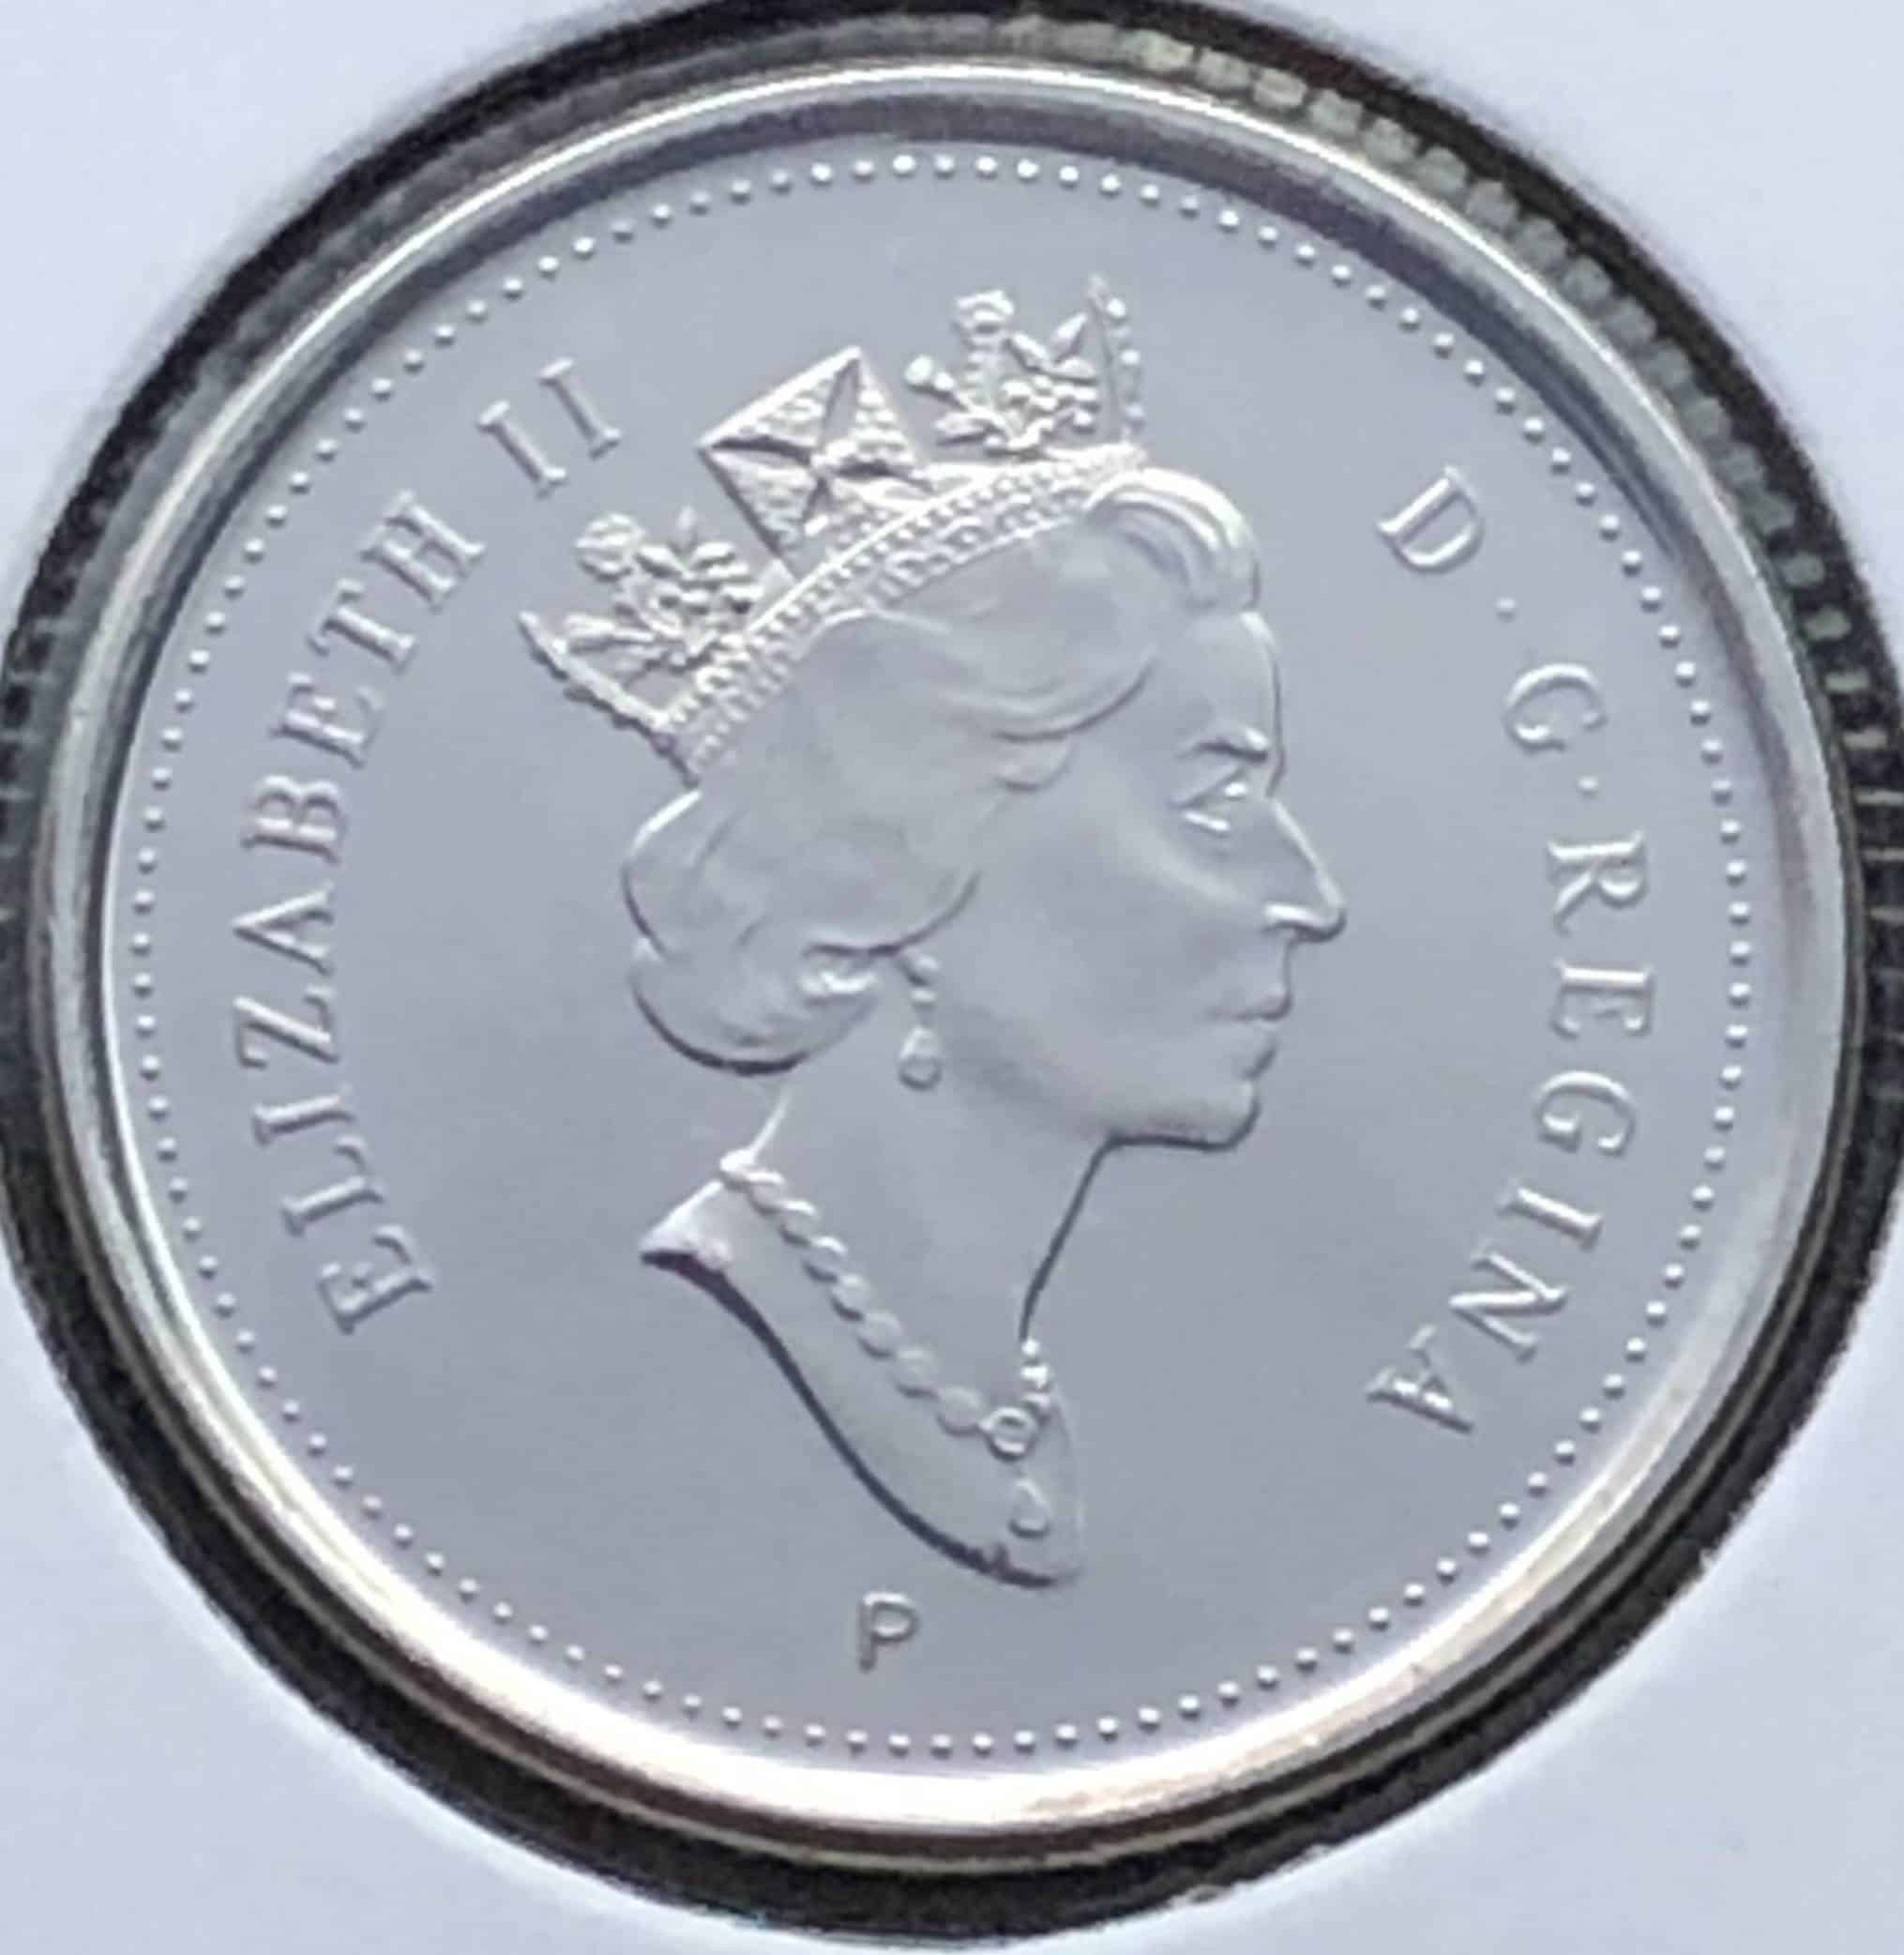 Canada - 10 cents 2003P Ancienne-Éffigie - B.UNC